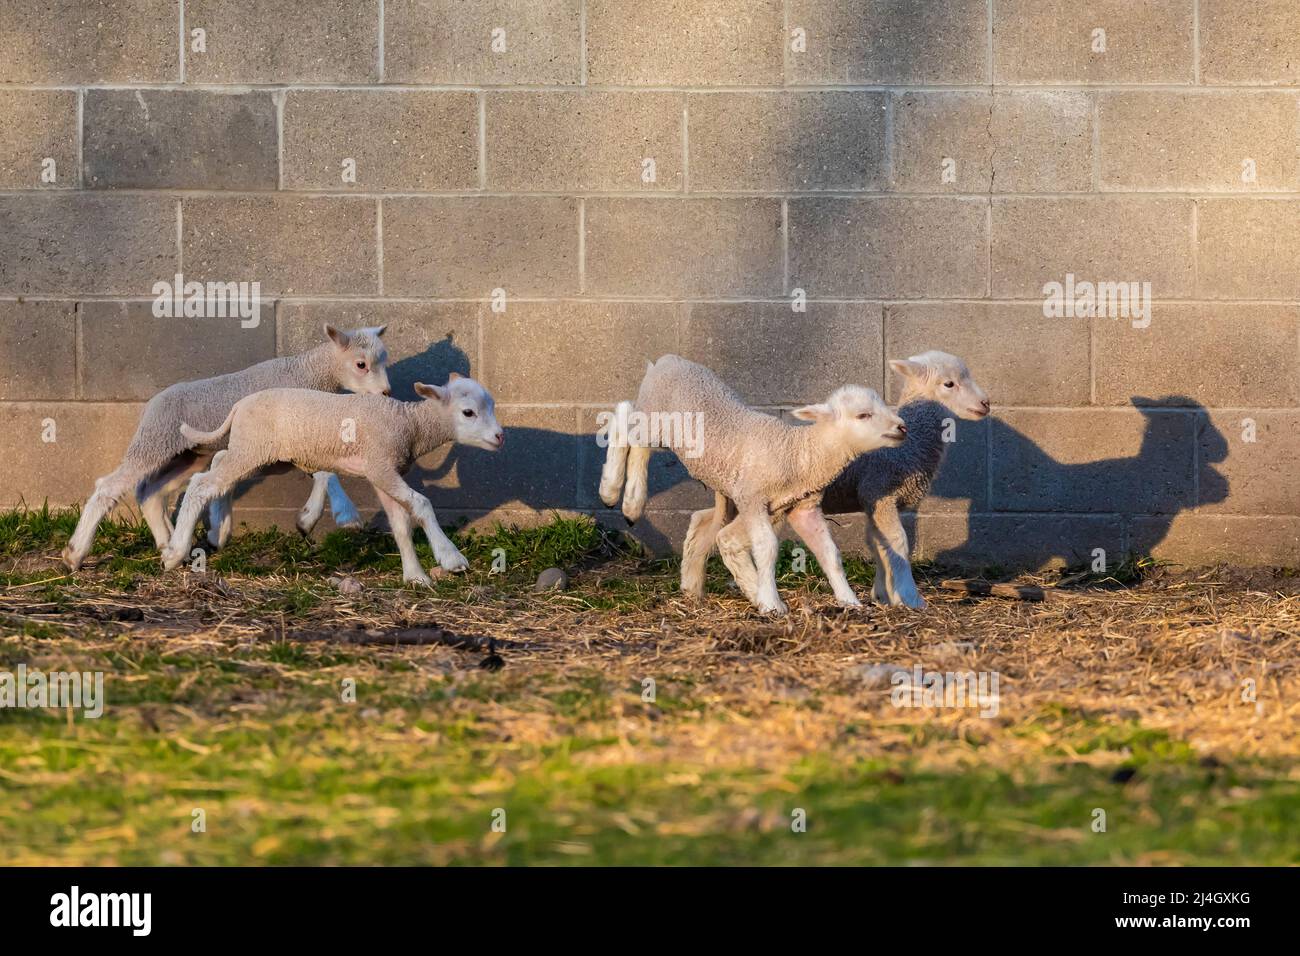 Jeunes moutons en jeu devant une grange Amish, au milieu du Michigan, aux États-Unis Banque D'Images